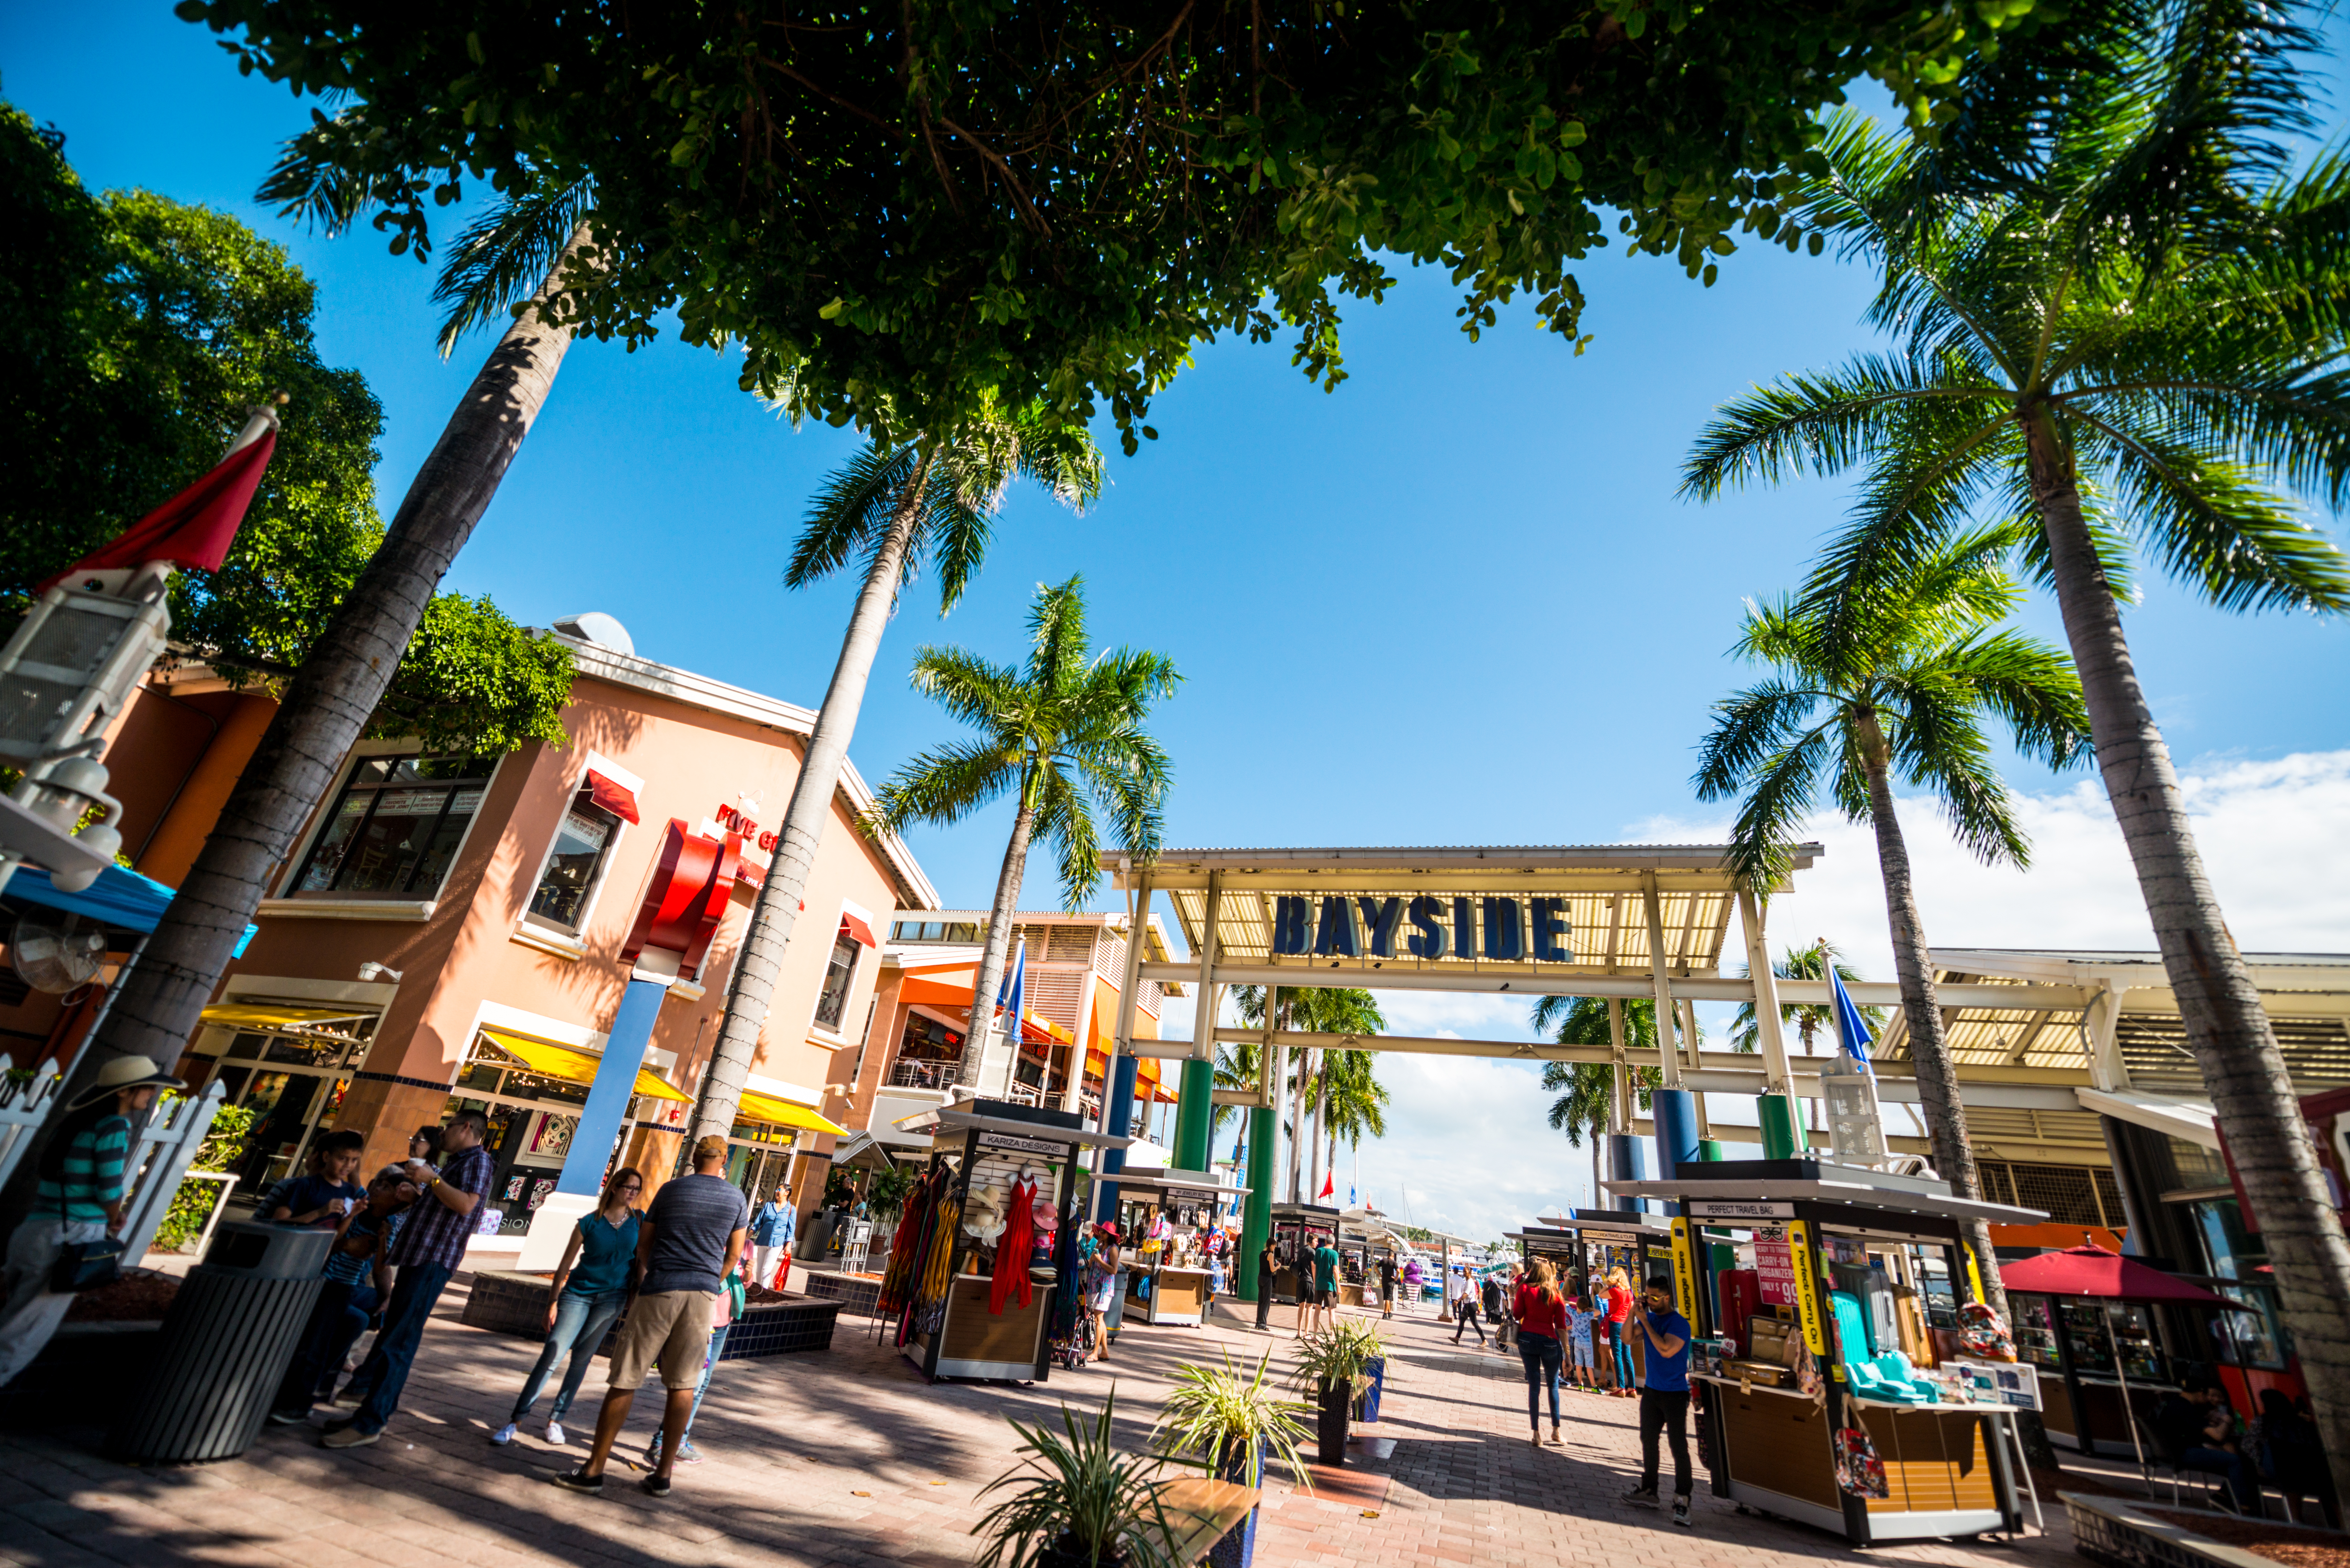 Miami Bayside shopping center